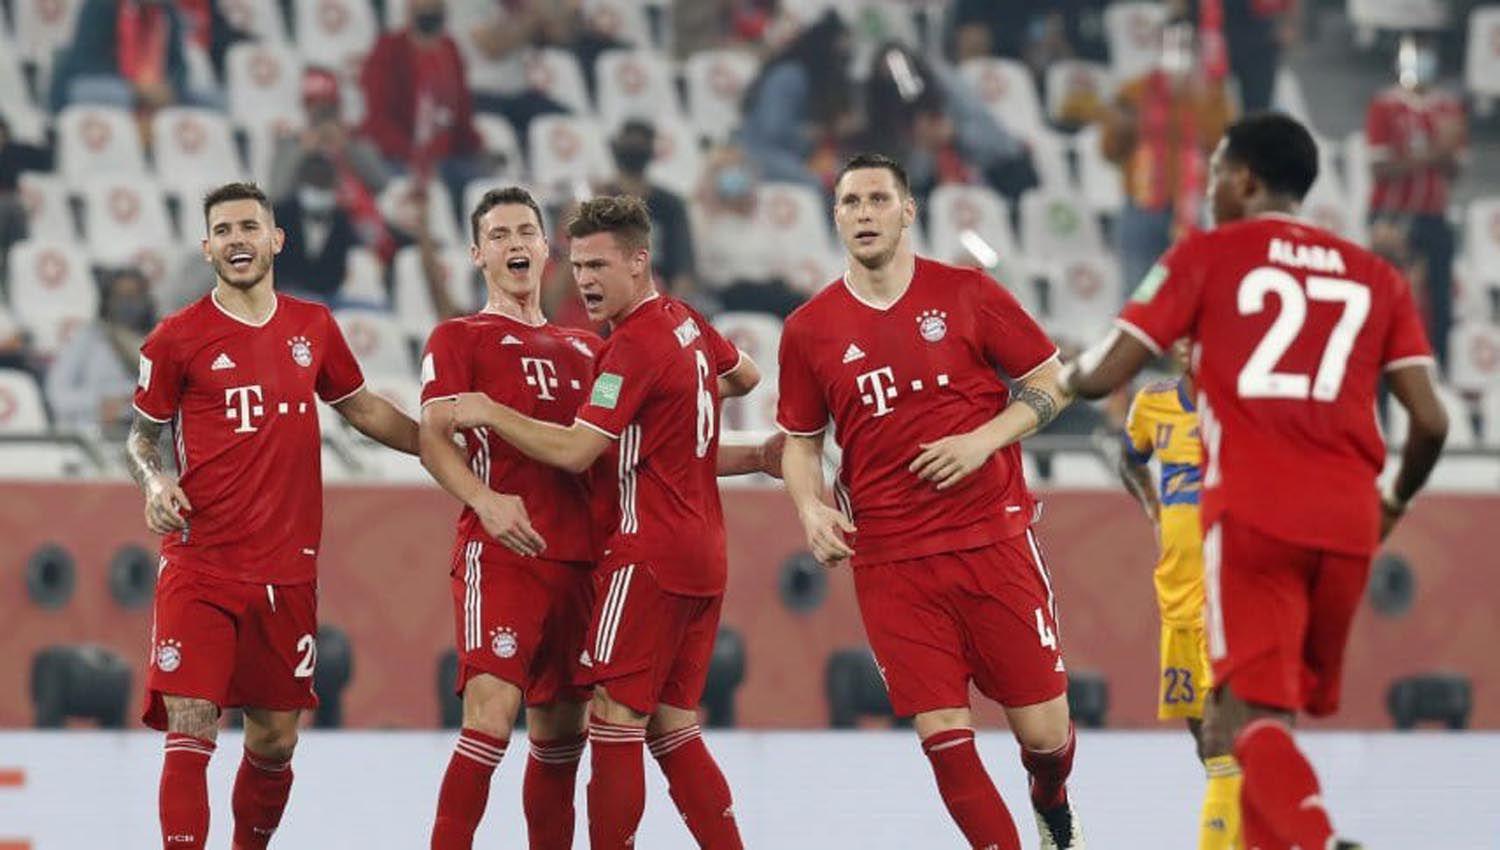 El Bayern Muacutenich derrotoacute a Tigres de Meacutexico y se consagroacute campeoacuten del Mundial de Clubes